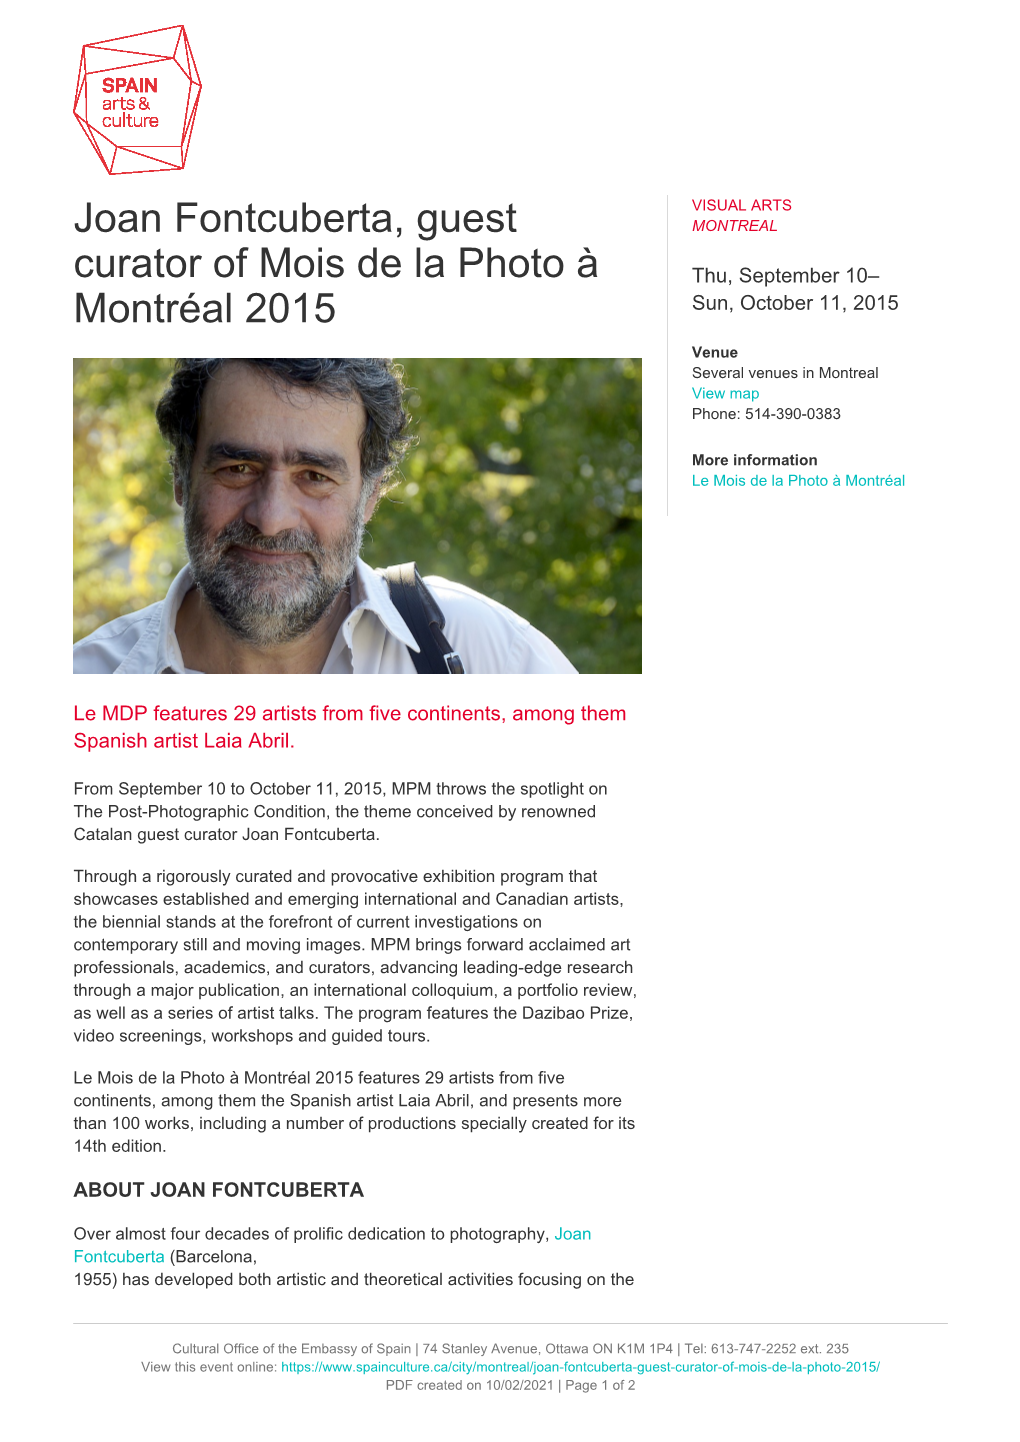 Joan Fontcuberta, Guest Curator of Mois De La Photo À Montréal 2015